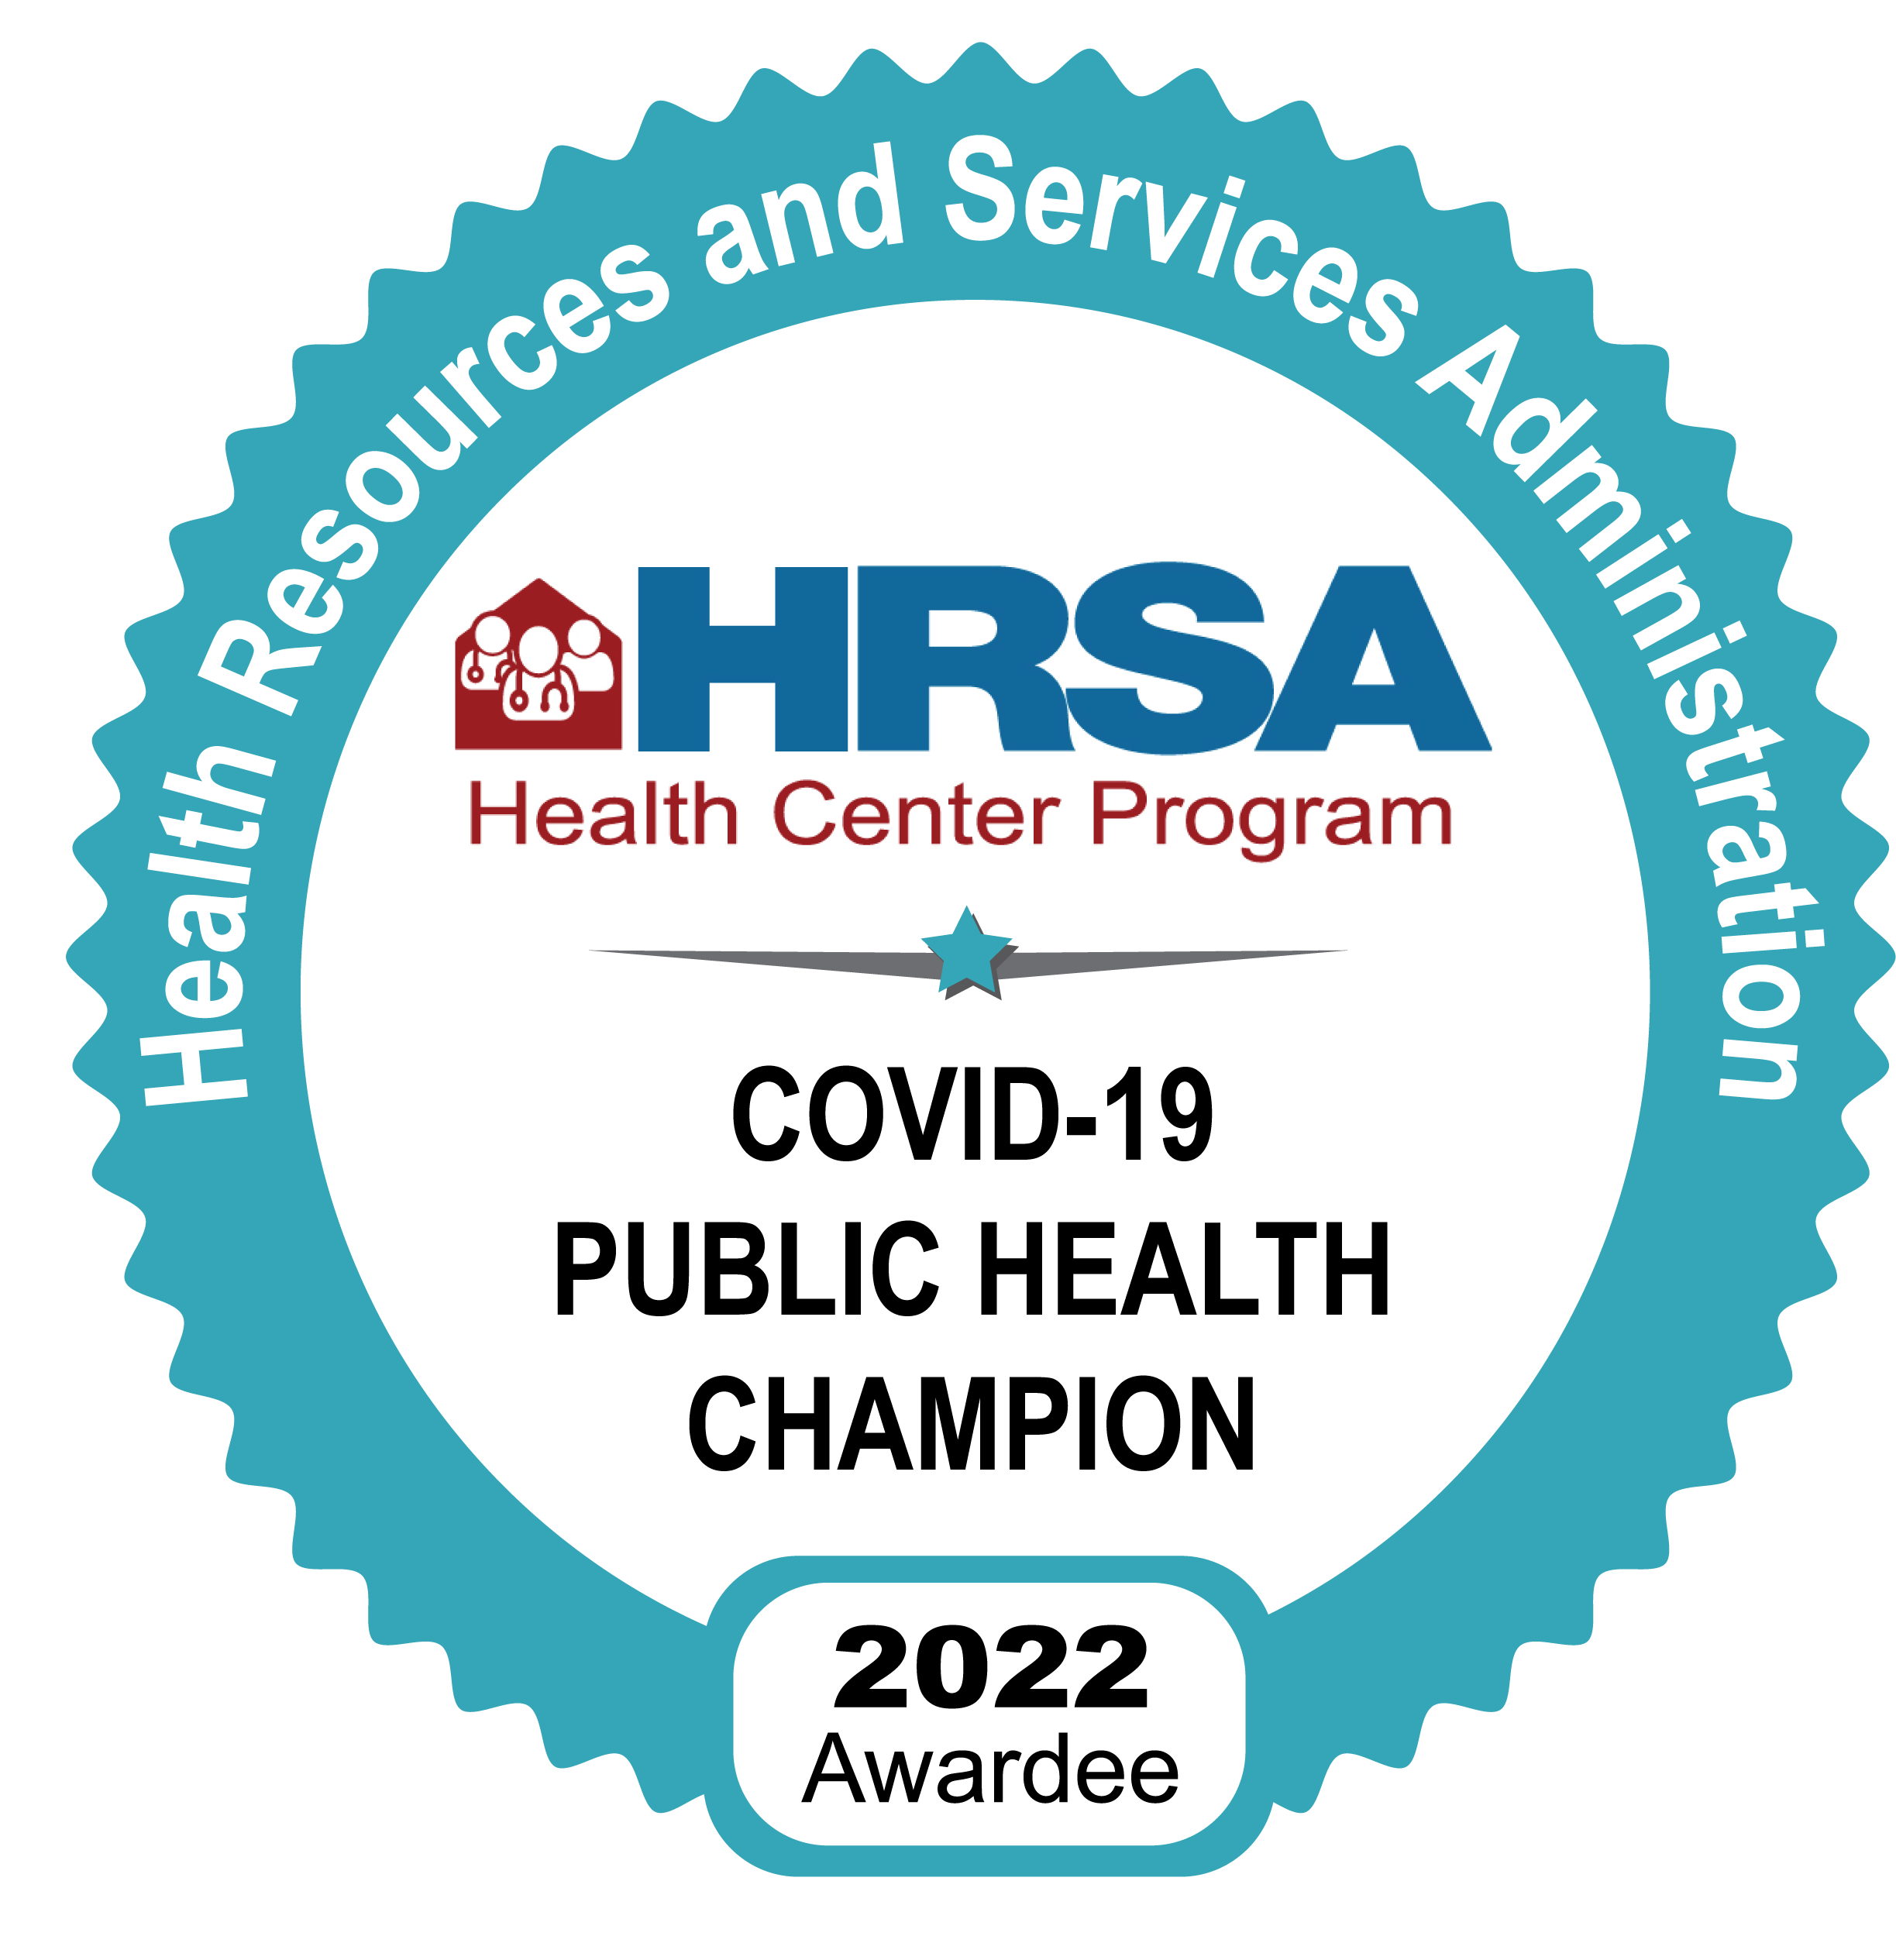 Covid-19 Public Health Champion